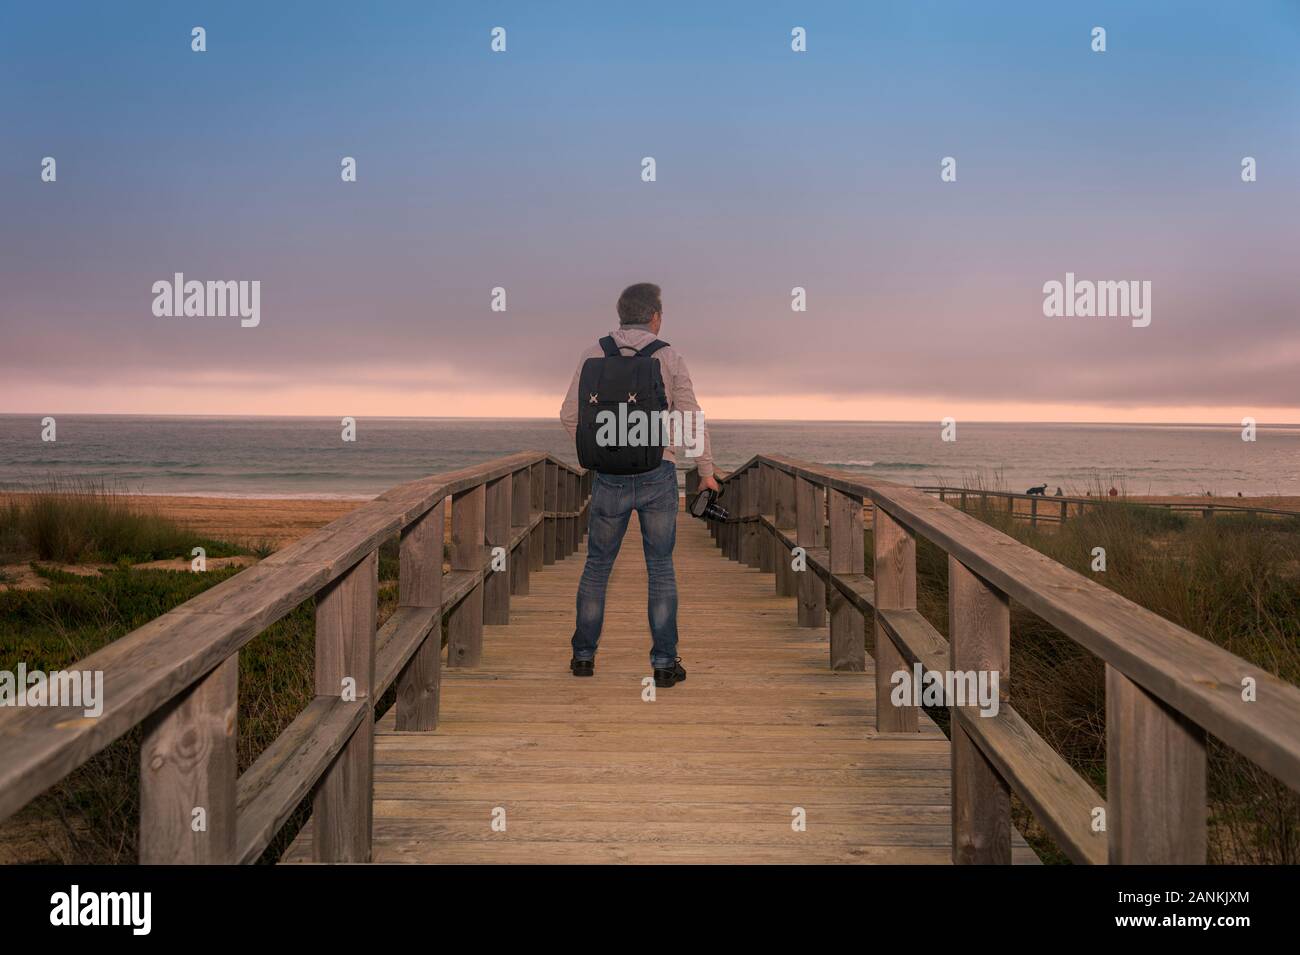 Vista posterior de un fotógrafo con una mochila de pie sobre una pasarela de madera con vistas al océano. Foto de stock